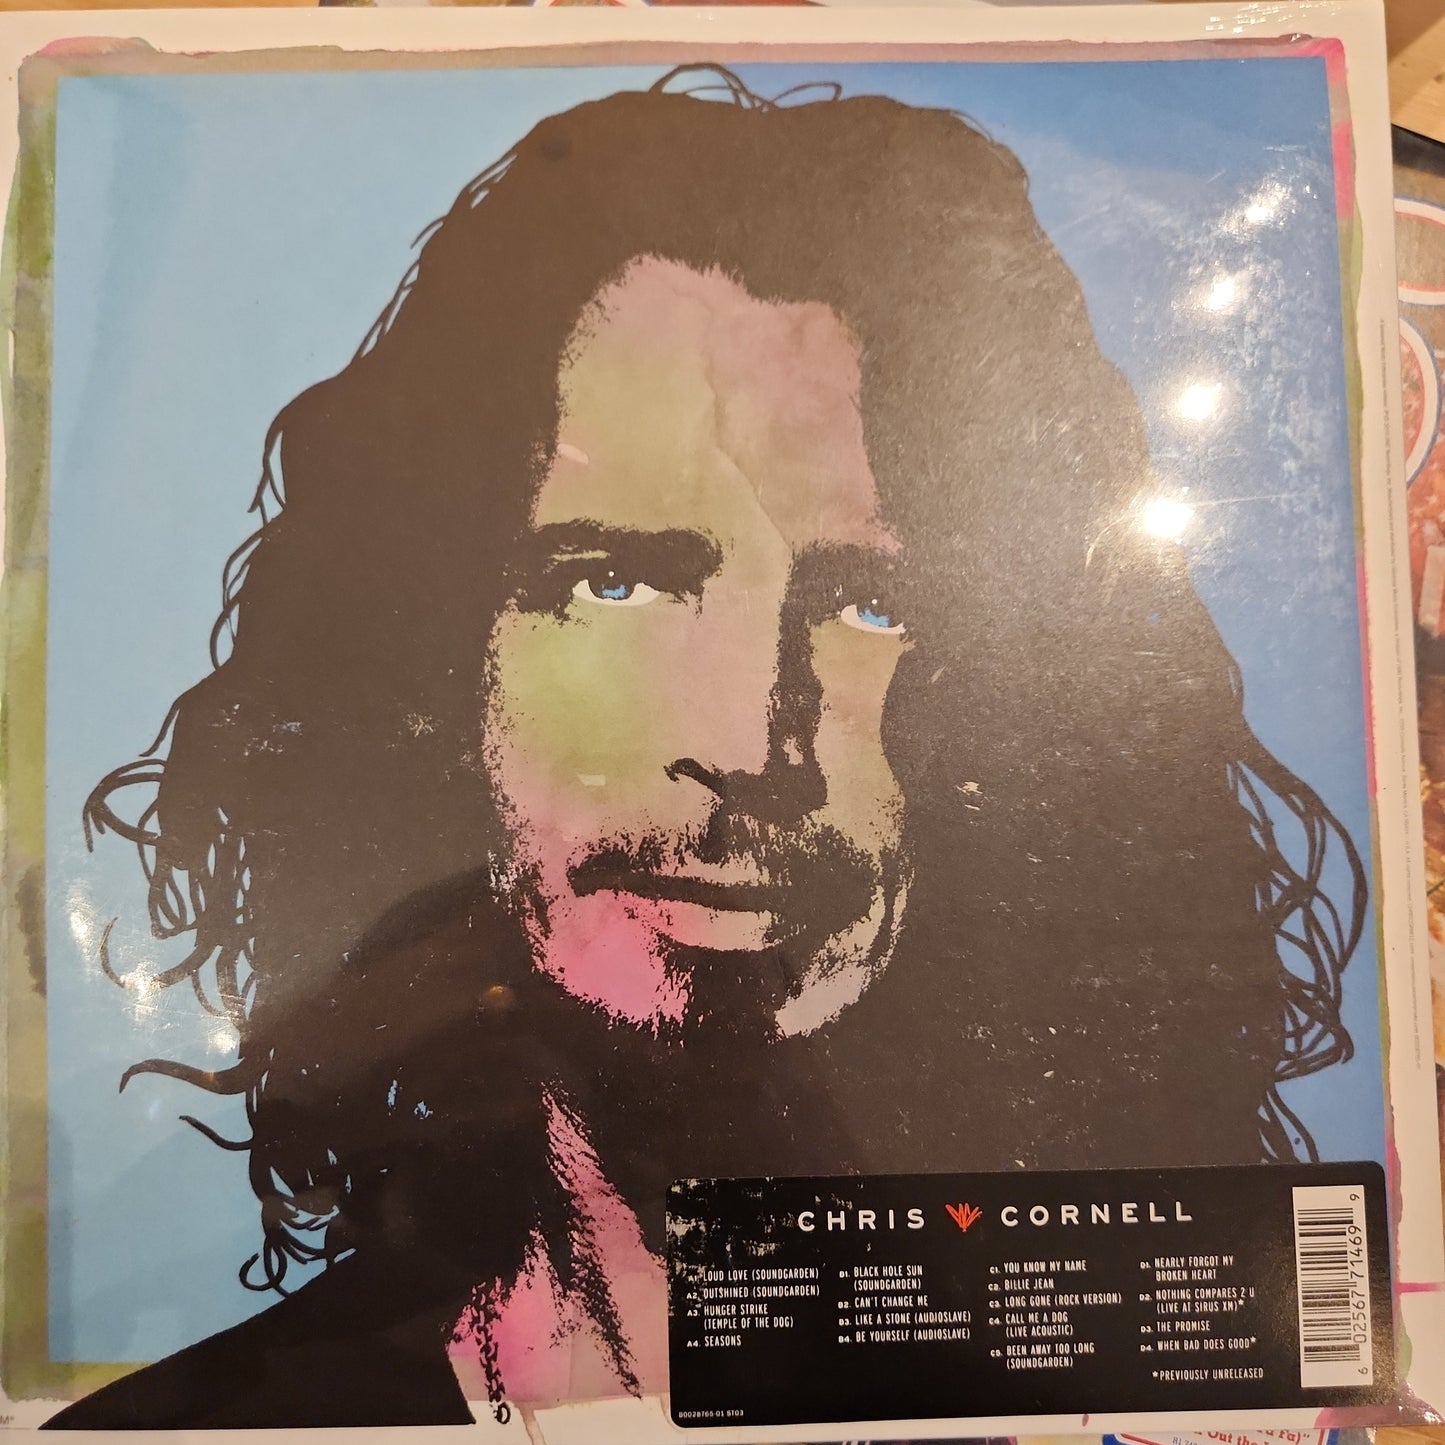 Chris Cornell - Chris Cornell - Vinyl LP